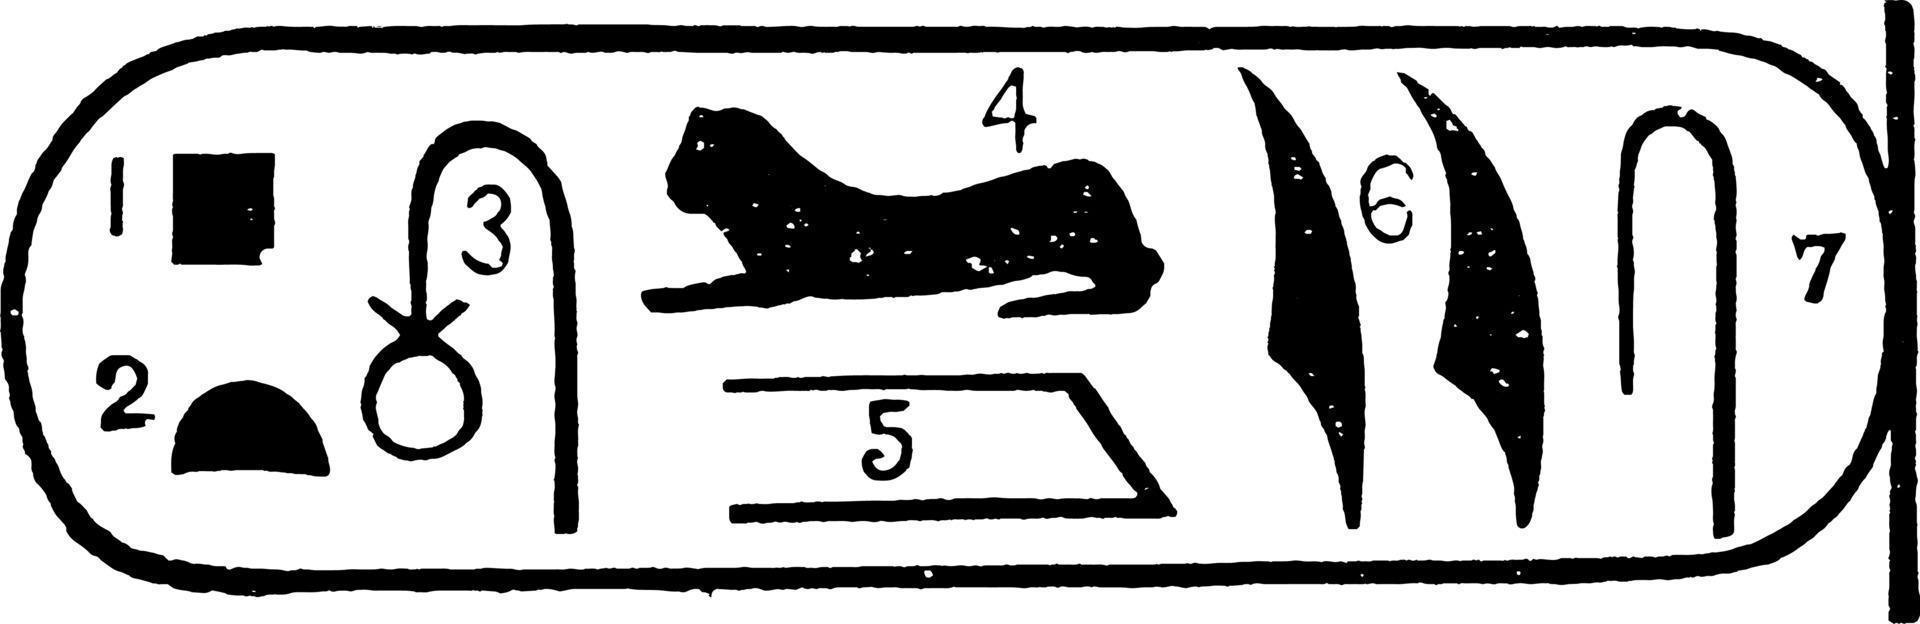 échantillon de pierre de rosette ou artefact égyptien, gravure vintage. vecteur